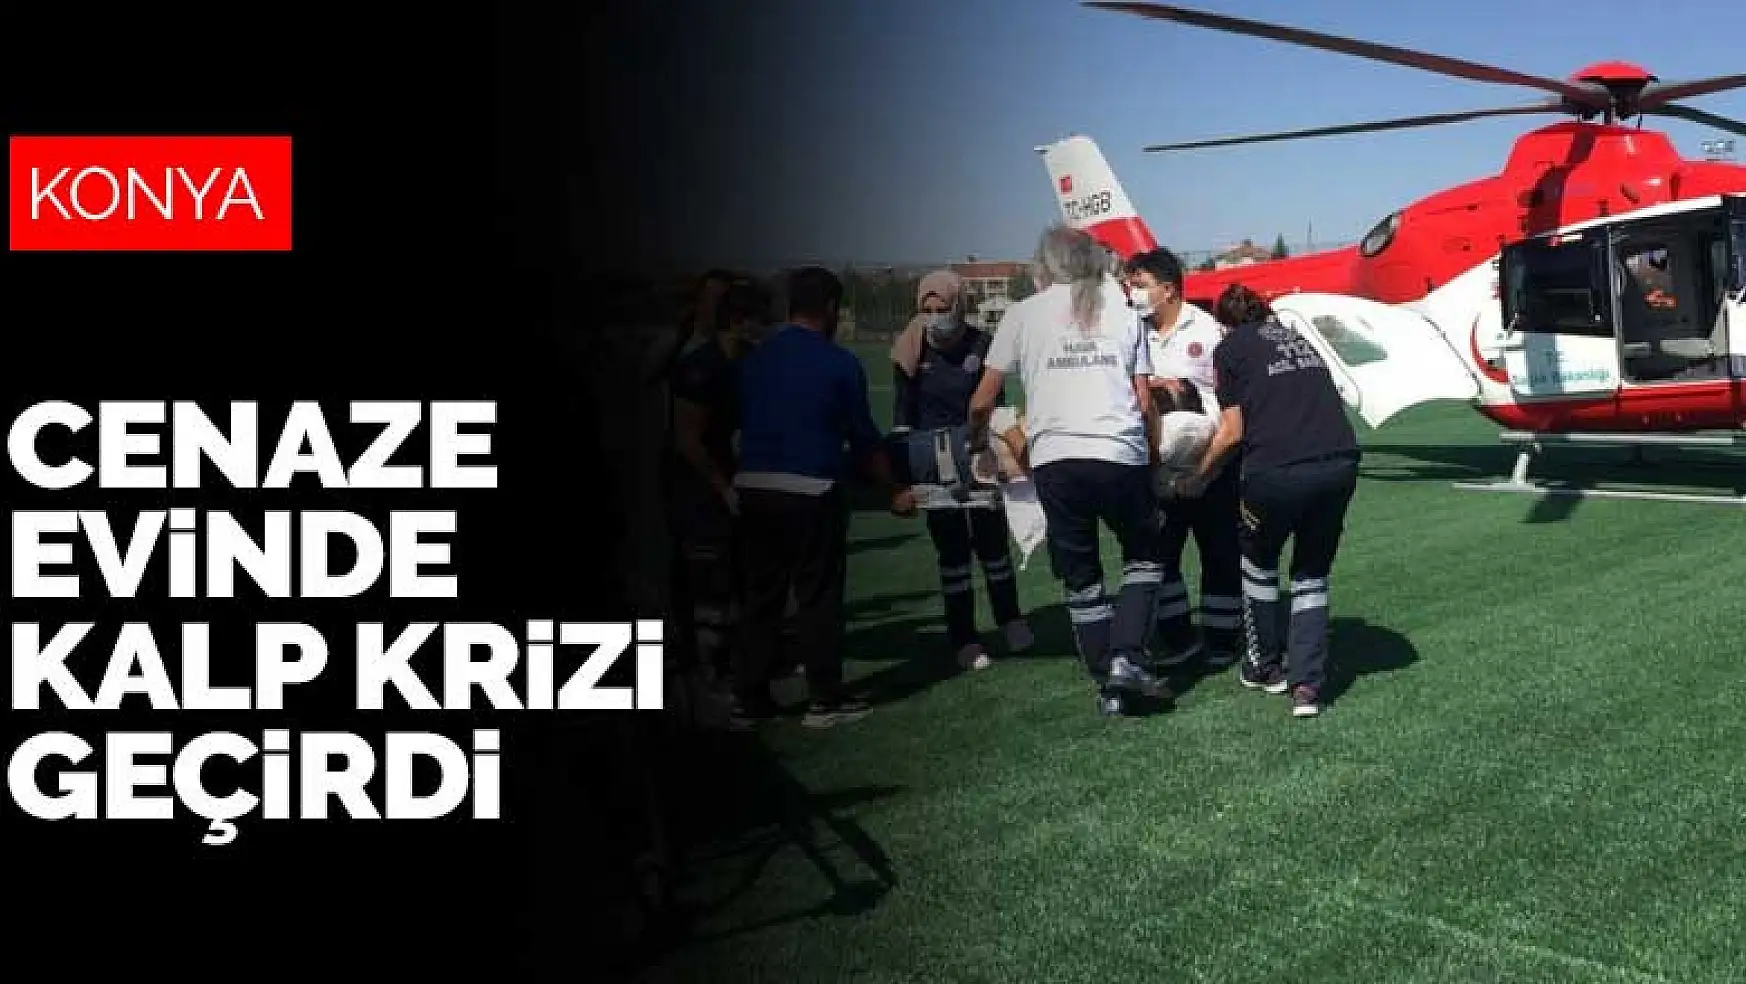 Cenaze evinde kalp krizi geçirdi! Hava ambulansıyla Konya'ya getirildi